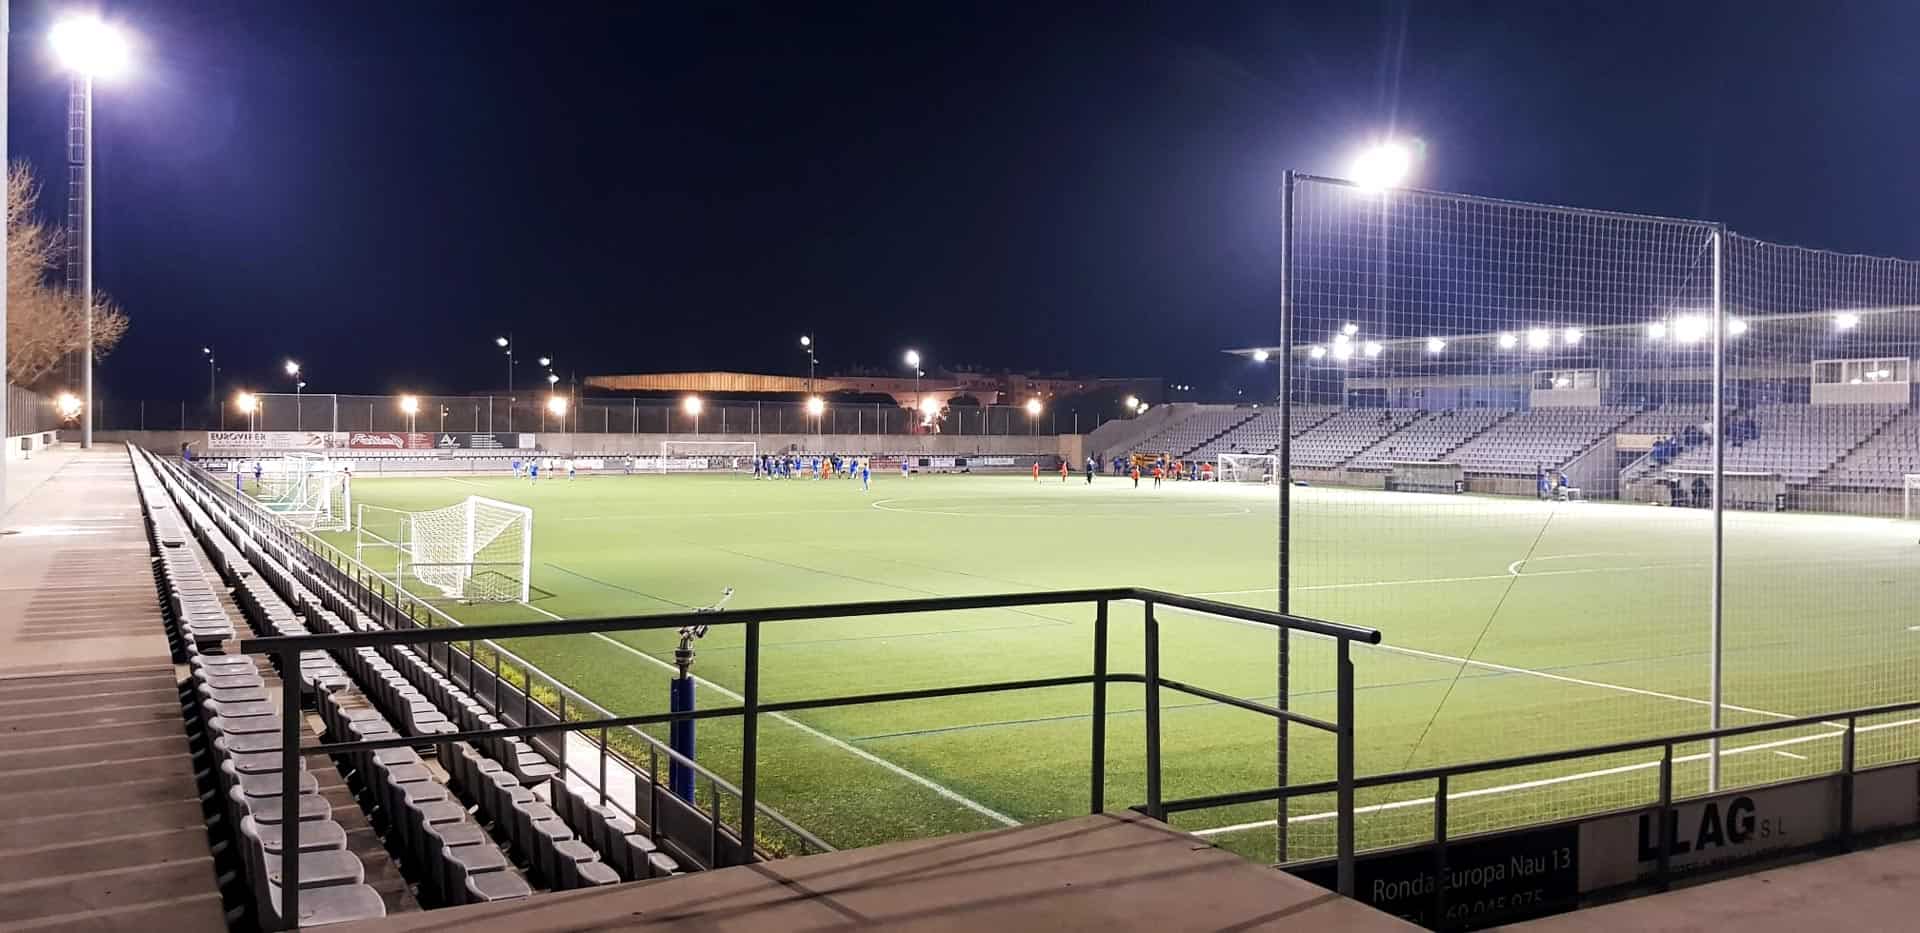 Instalación Iluminacion LED para campos de futbol - Vilanova i la Geltru